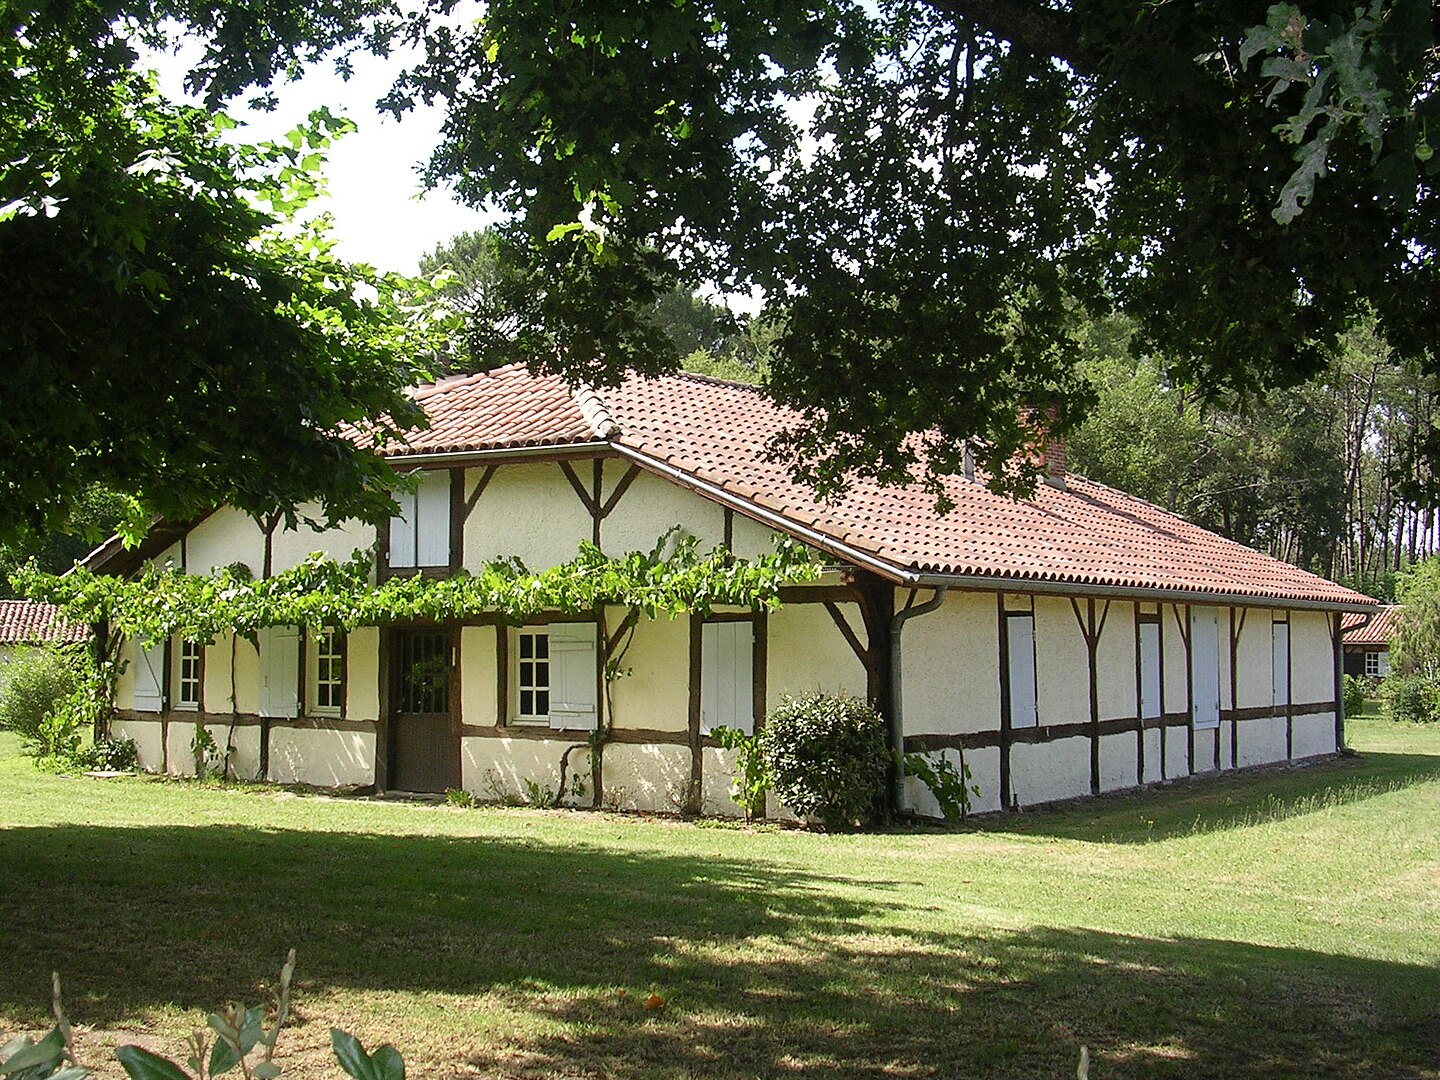 Ancienne maison landaise à Bouricos, Département des Landes, région Nouvelle-Aquitaine. Par Jibi44 —  CC BY-SA 3.0,